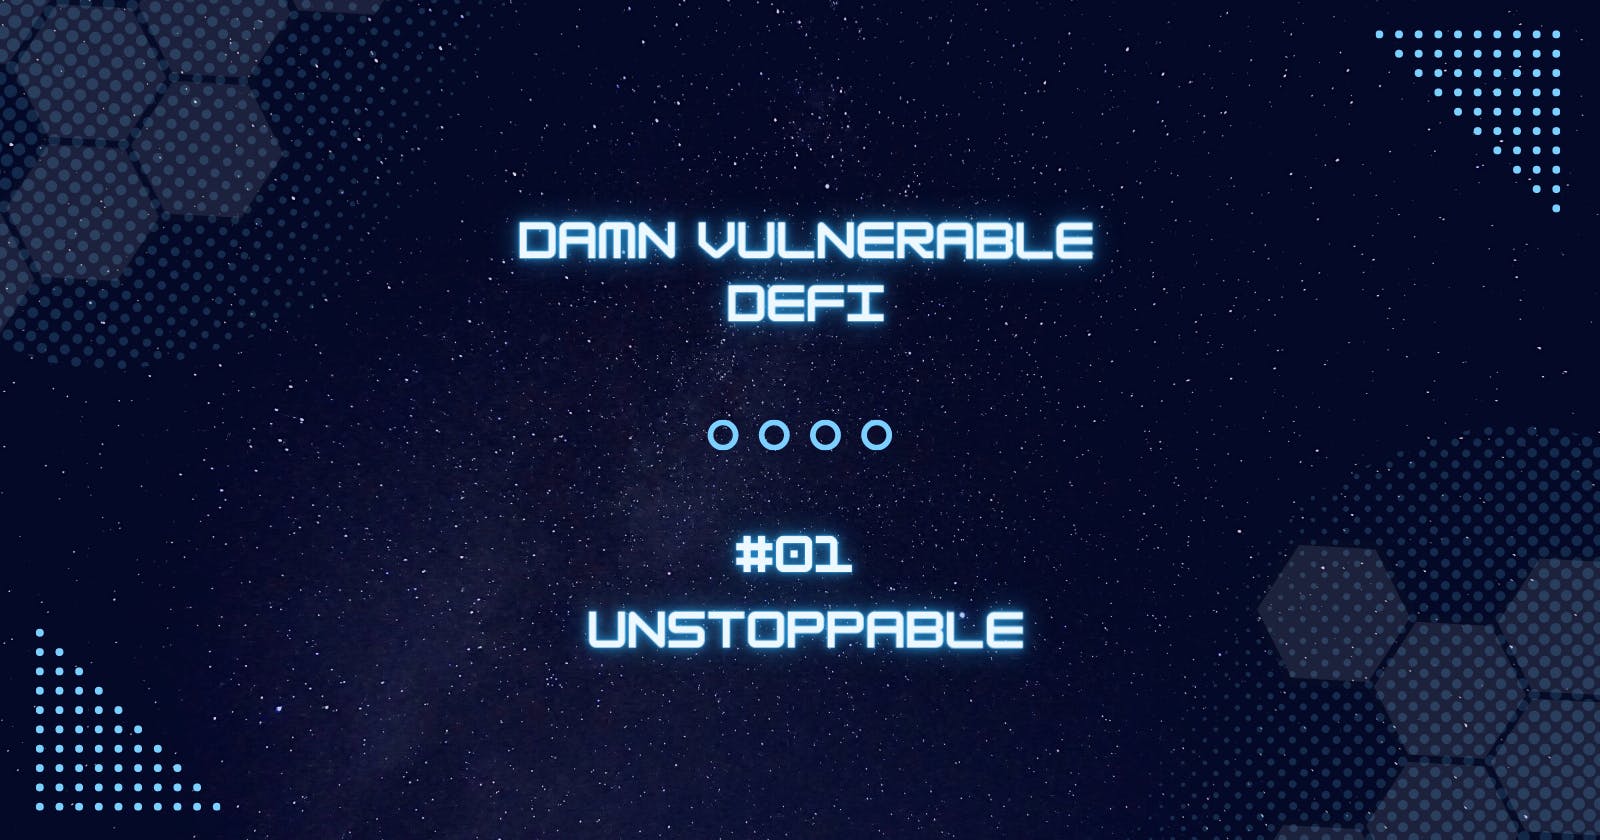 Unstoppable - Damn Vulnerable DeFi #01